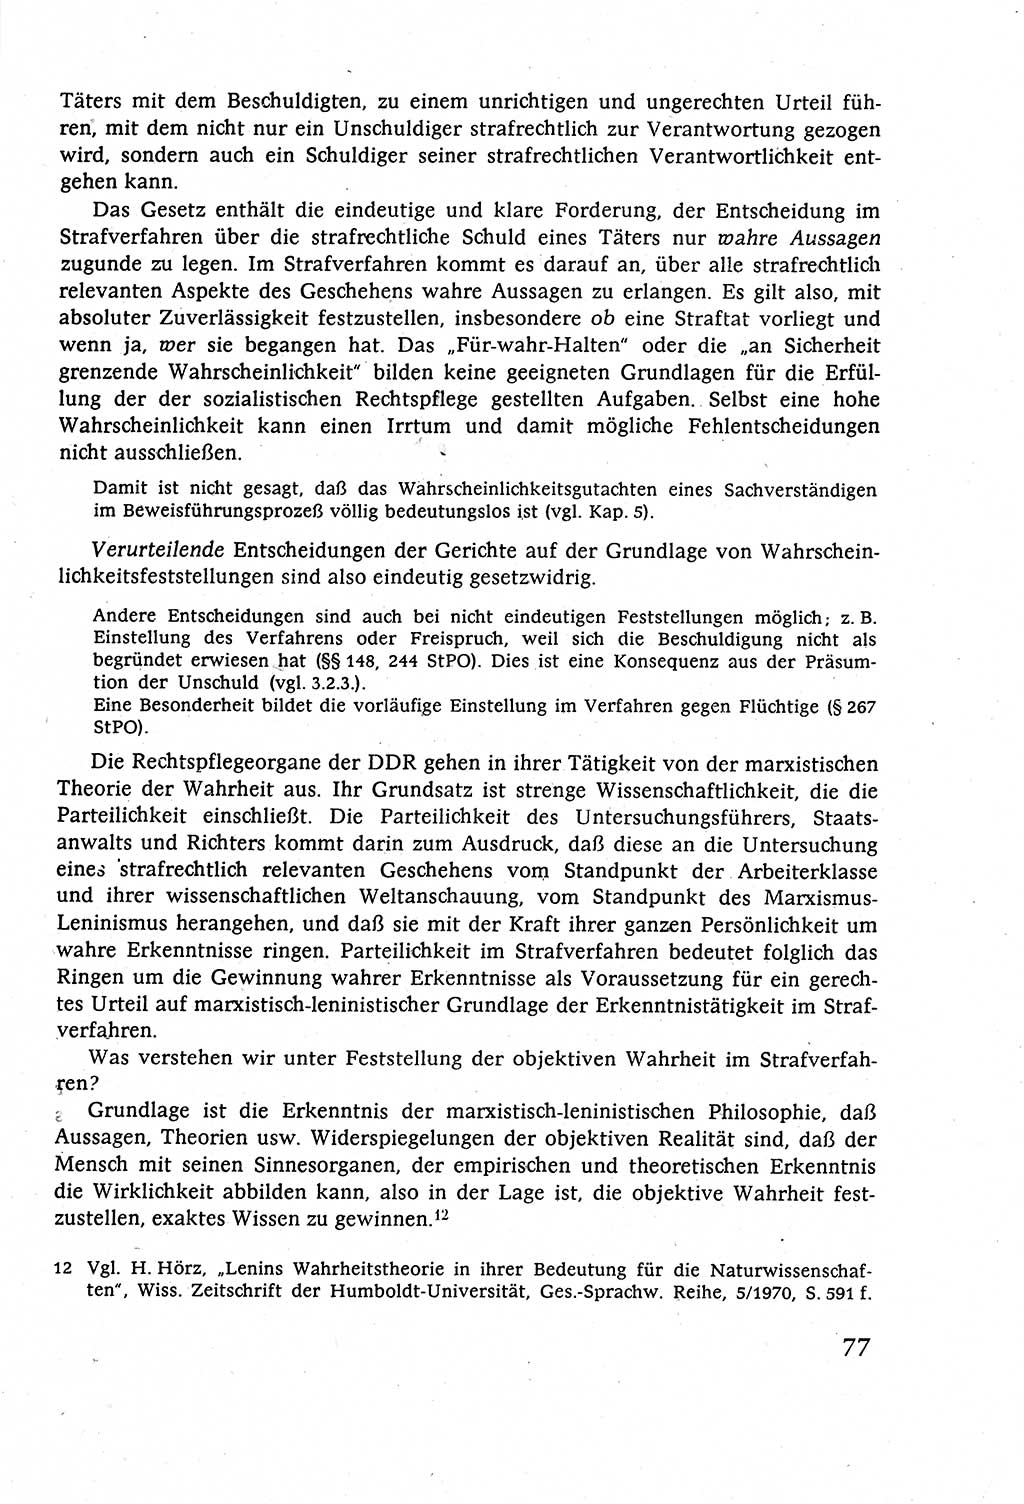 Strafverfahrensrecht [Deutsche Demokratische Republik (DDR)], Lehrbuch 1977, Seite 77 (Strafverf.-R. DDR Lb. 1977, S. 77)